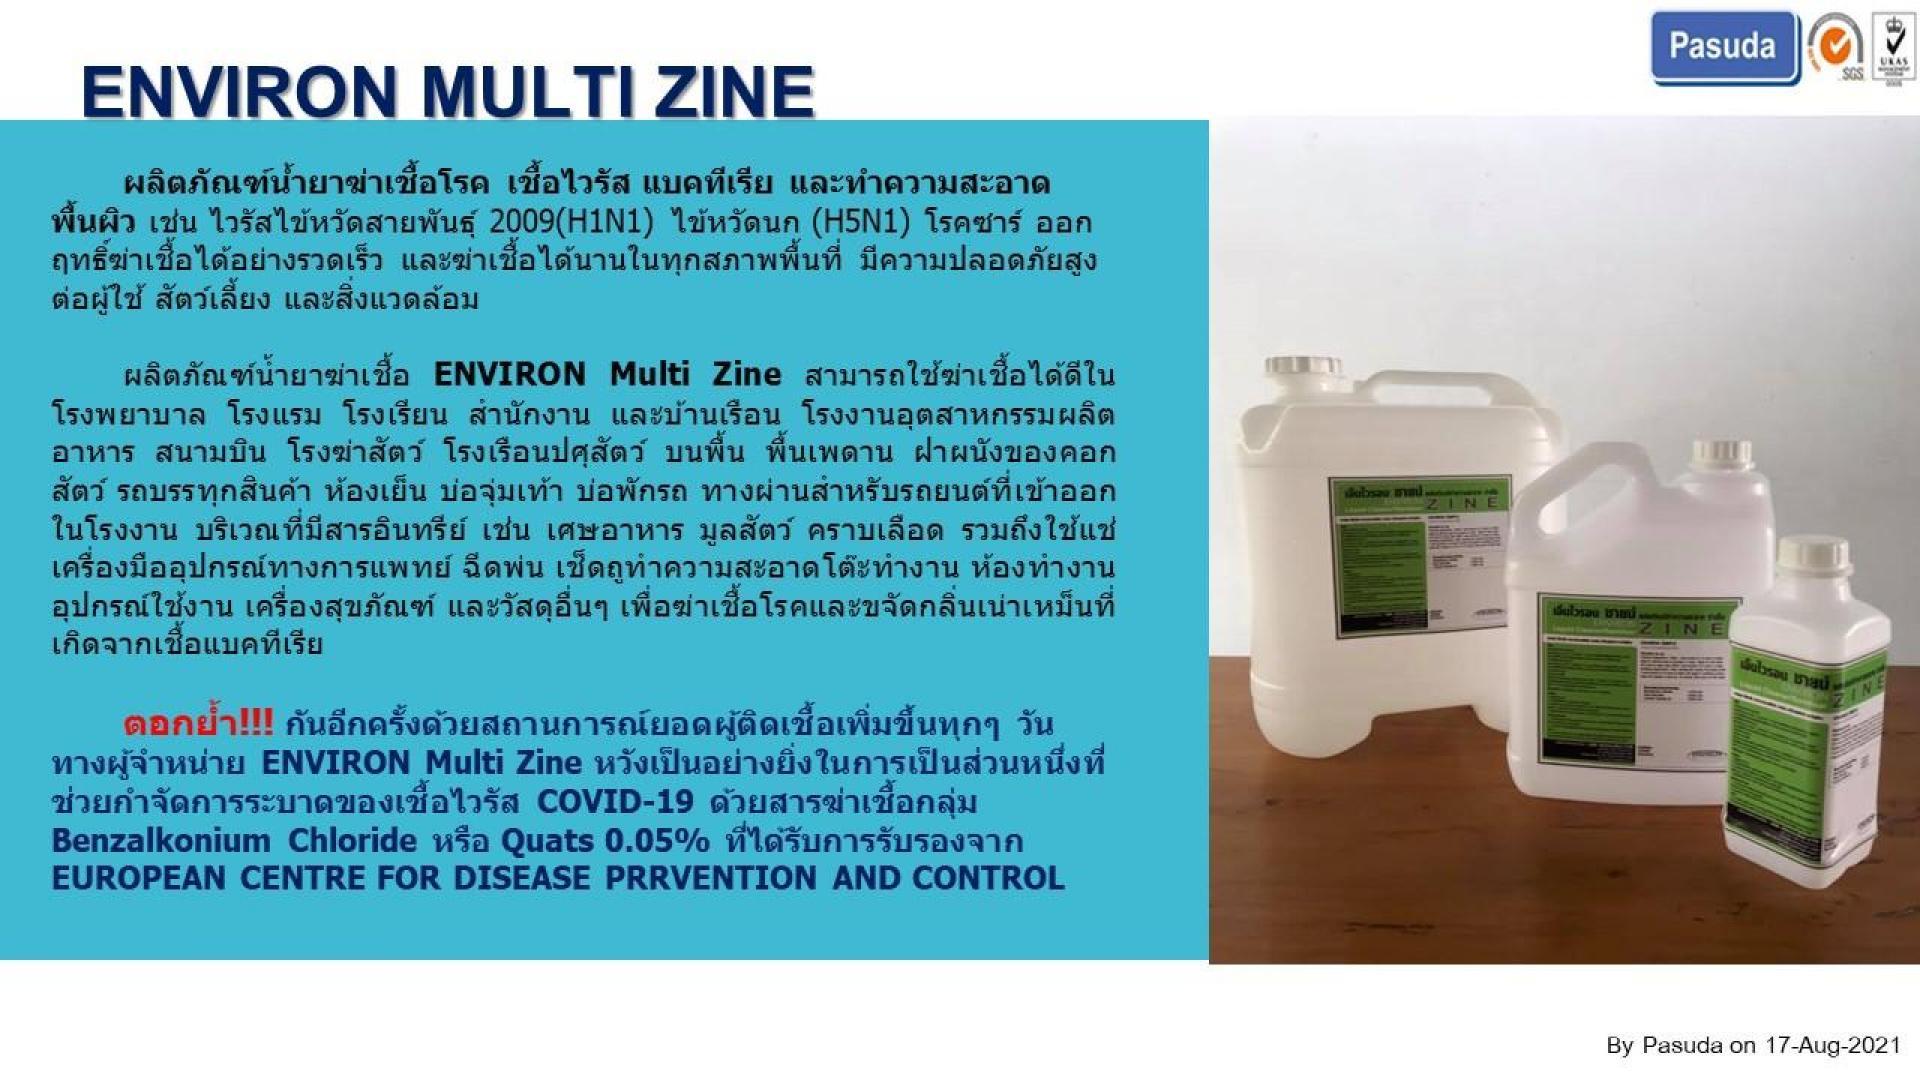 น้ำยาฆ่าเชื้อ ENVIRON Multi Zine